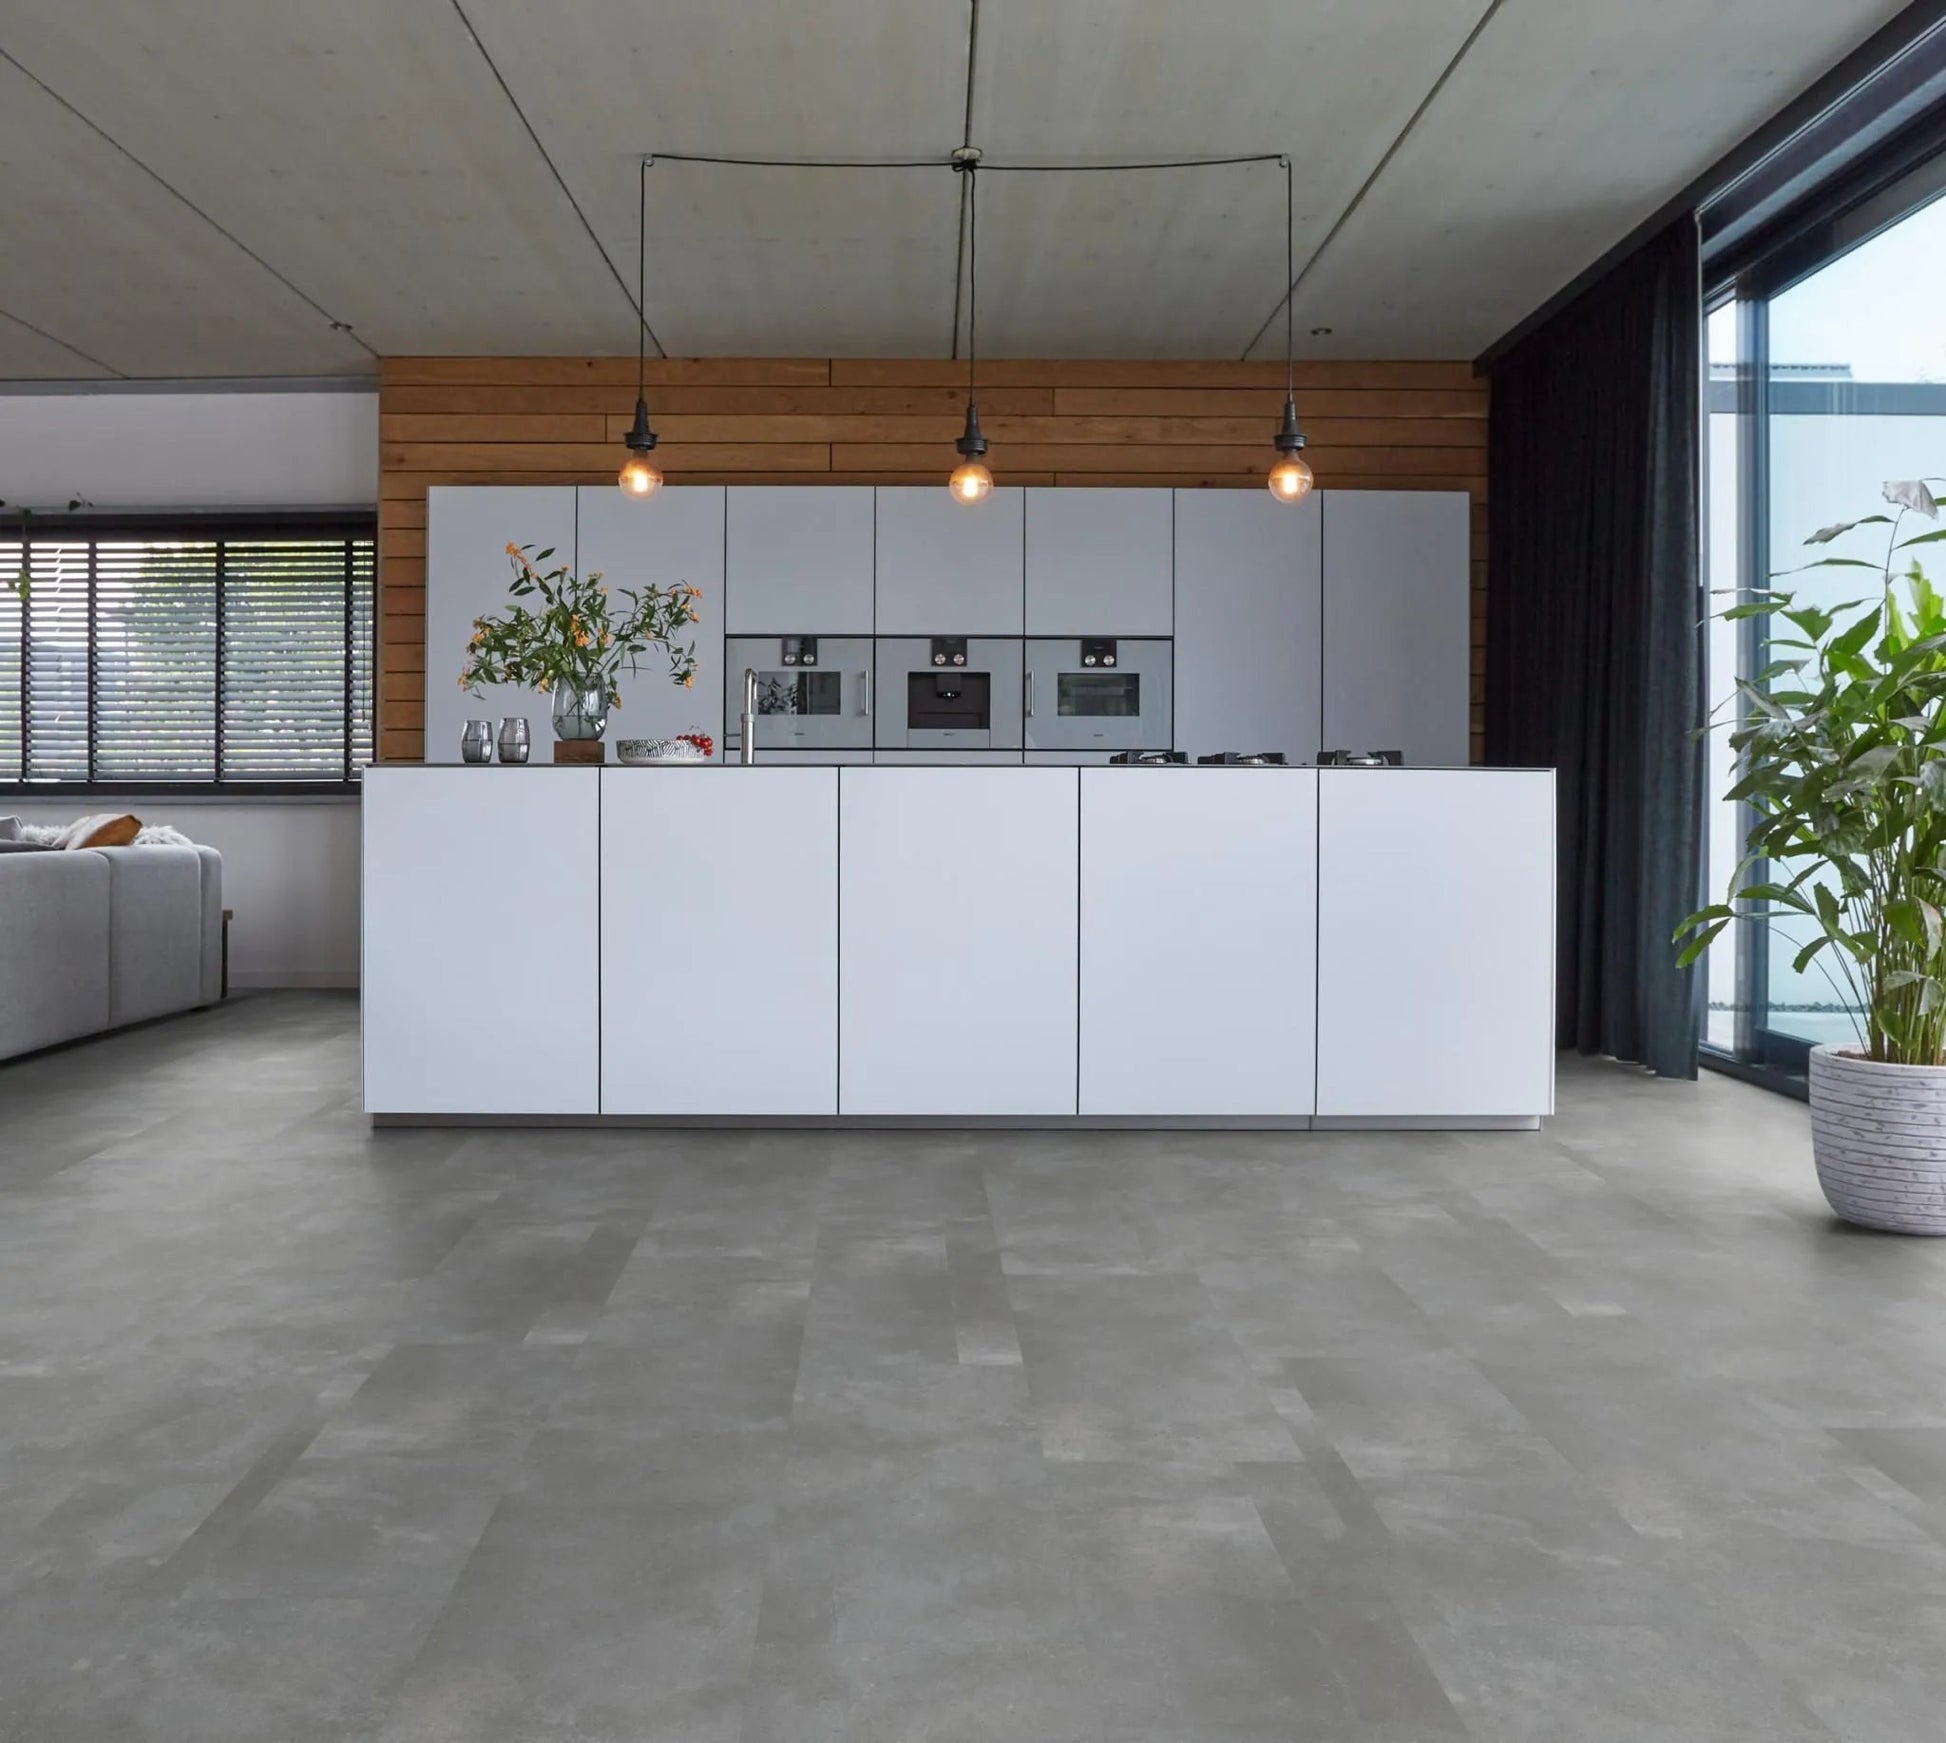 Floorlife Ealing Grey 7312 Tile Dryback PVC - Solza.fr